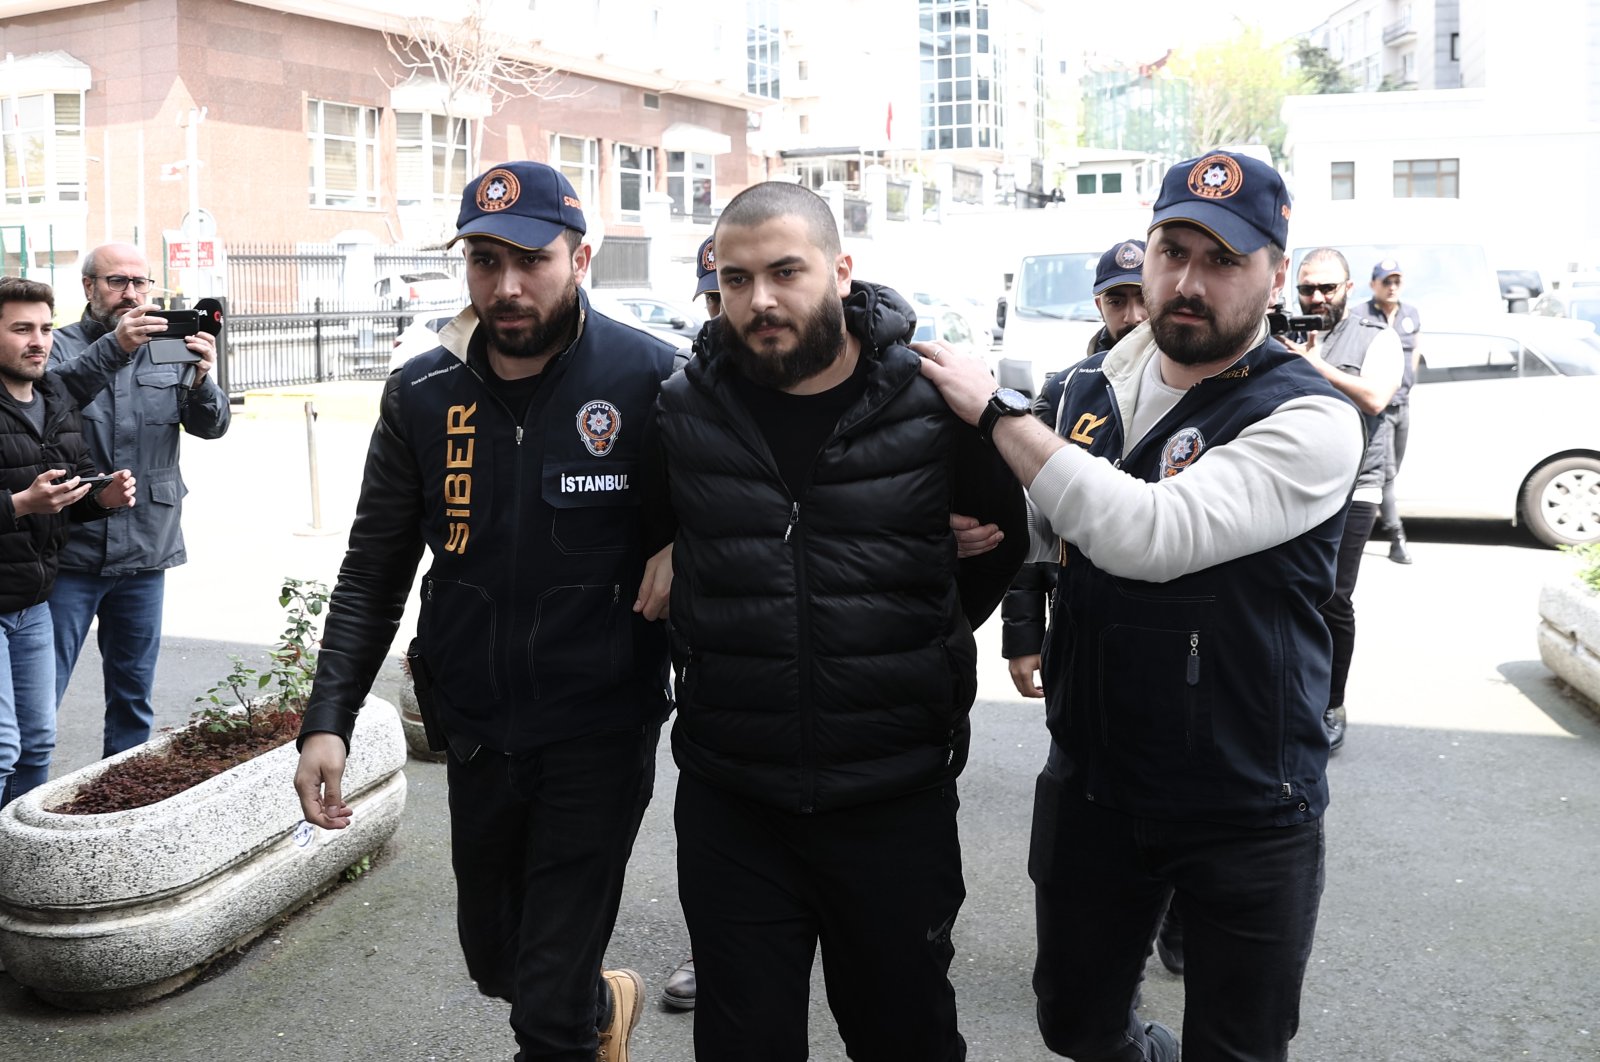 Mantan bos crypto Turki menghadapi hukuman lebih dari 40.400 tahun penjara karena penipuan